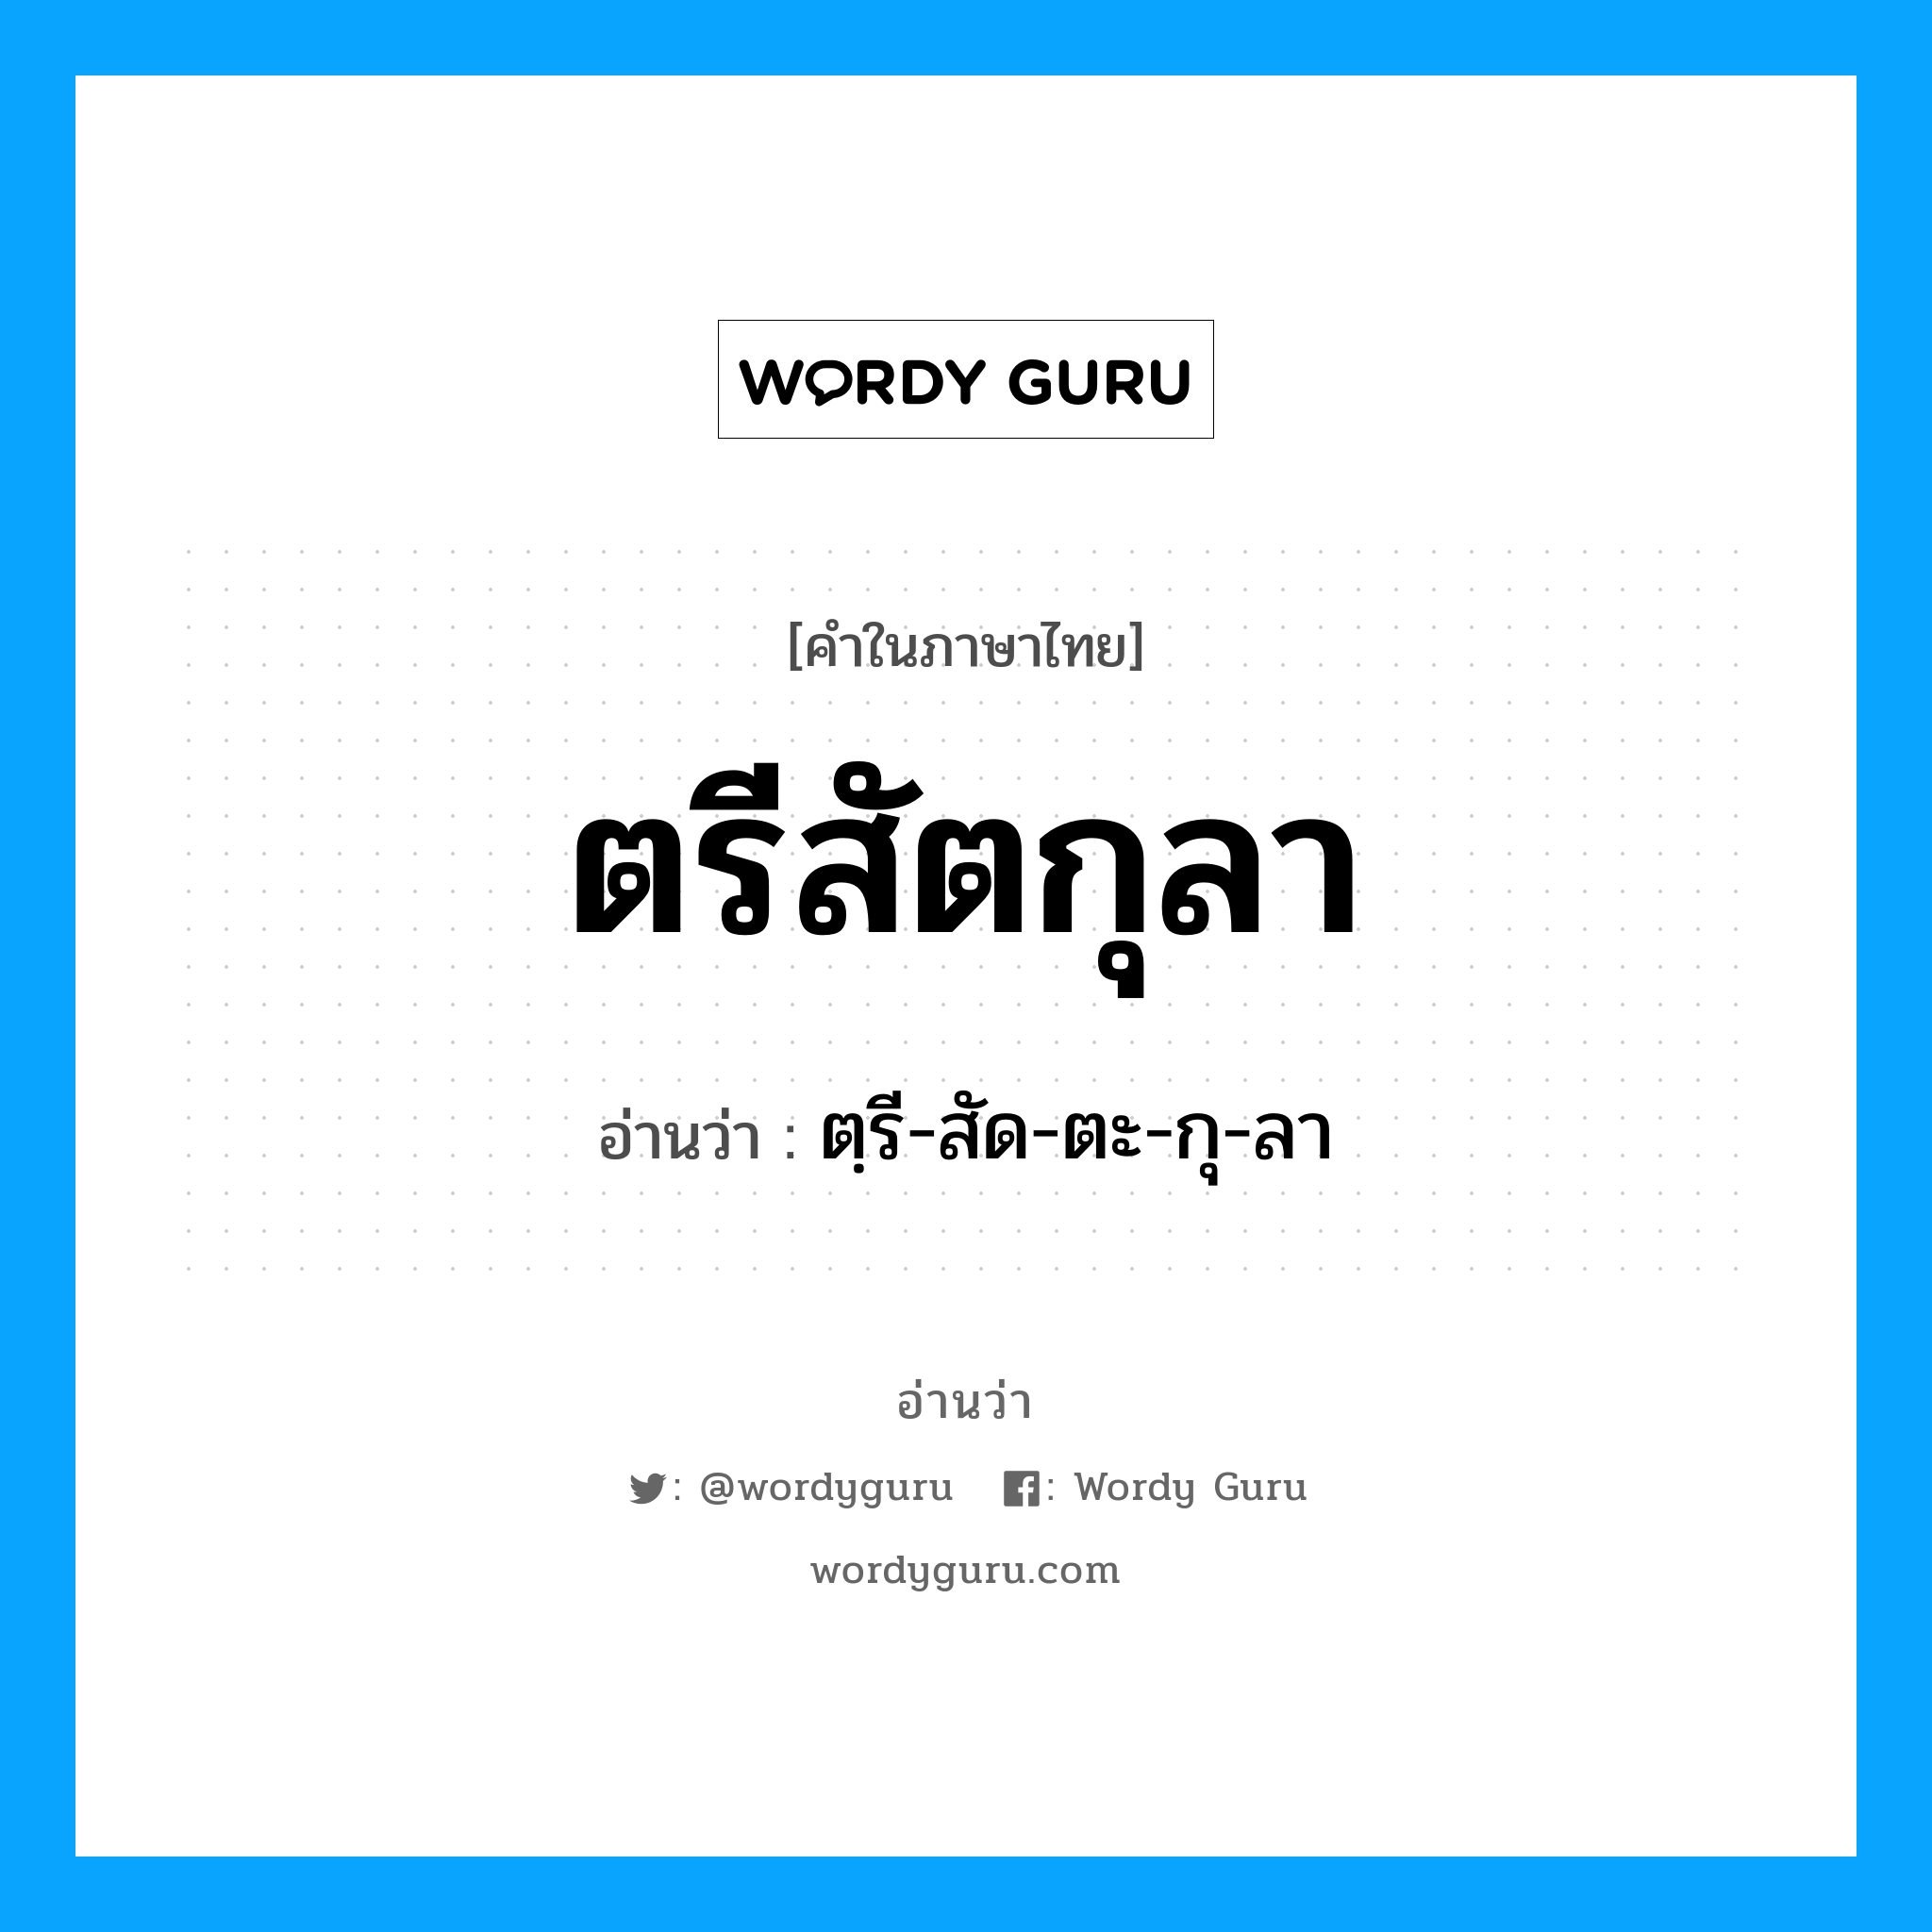 ตฺรี-สัด-ตะ-กุ-ลา เป็นคำอ่านของคำไหน?, คำในภาษาไทย ตฺรี-สัด-ตะ-กุ-ลา อ่านว่า ตรีสัตกุลา